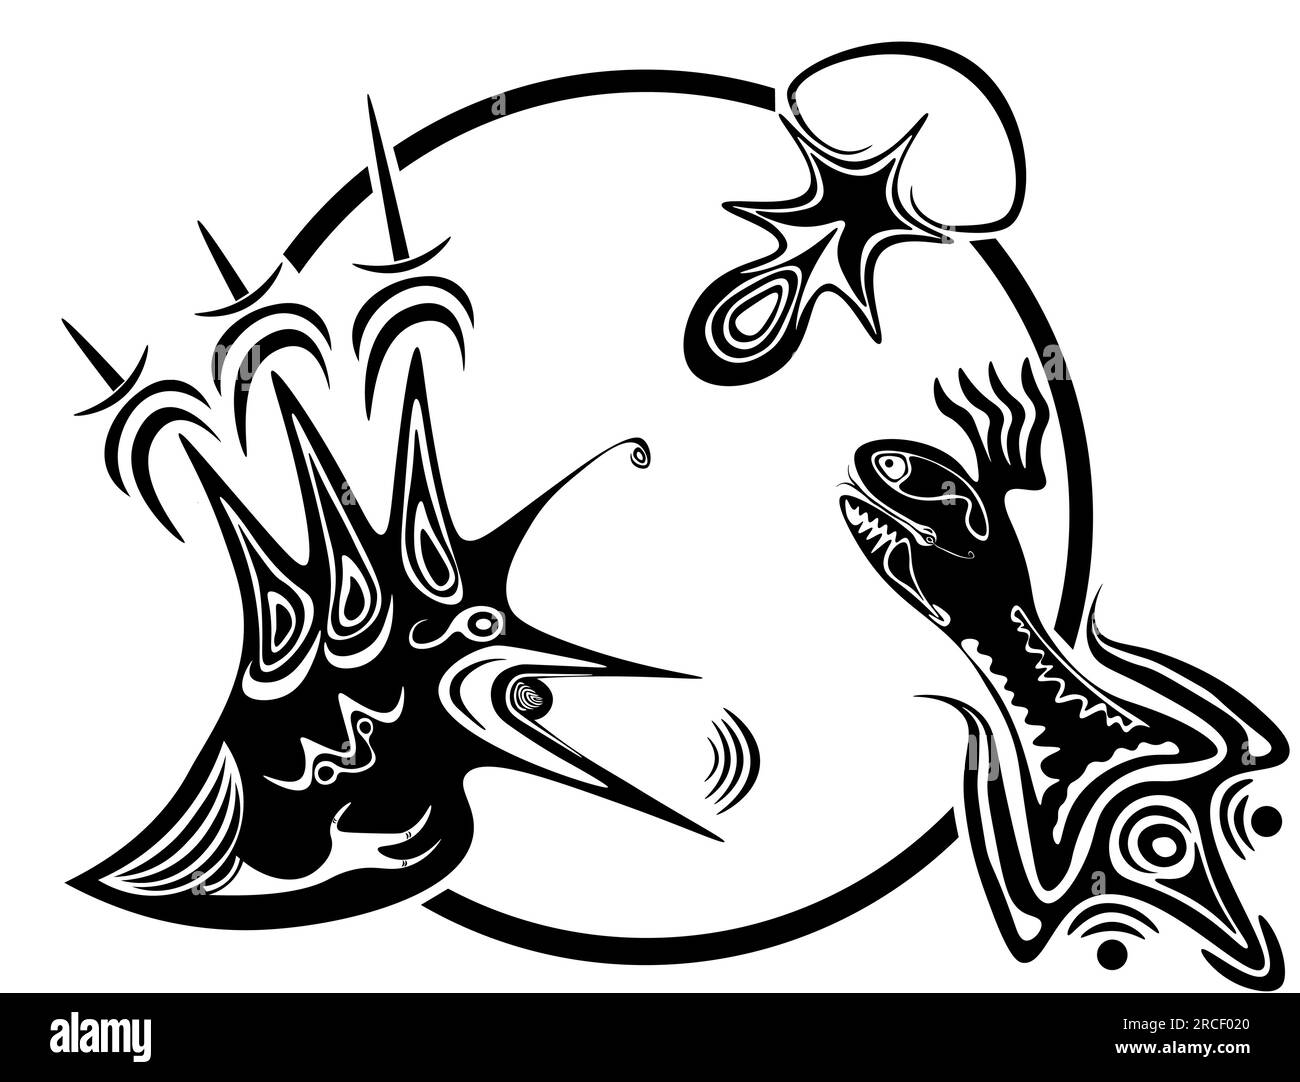 Questa illustrazione vettoriale astratta in bianco e nero mostra tre figure collegate all'interno di un cerchio: Un uccello con caratteristiche taglienti e piede simile a quello umano Illustrazione Vettoriale